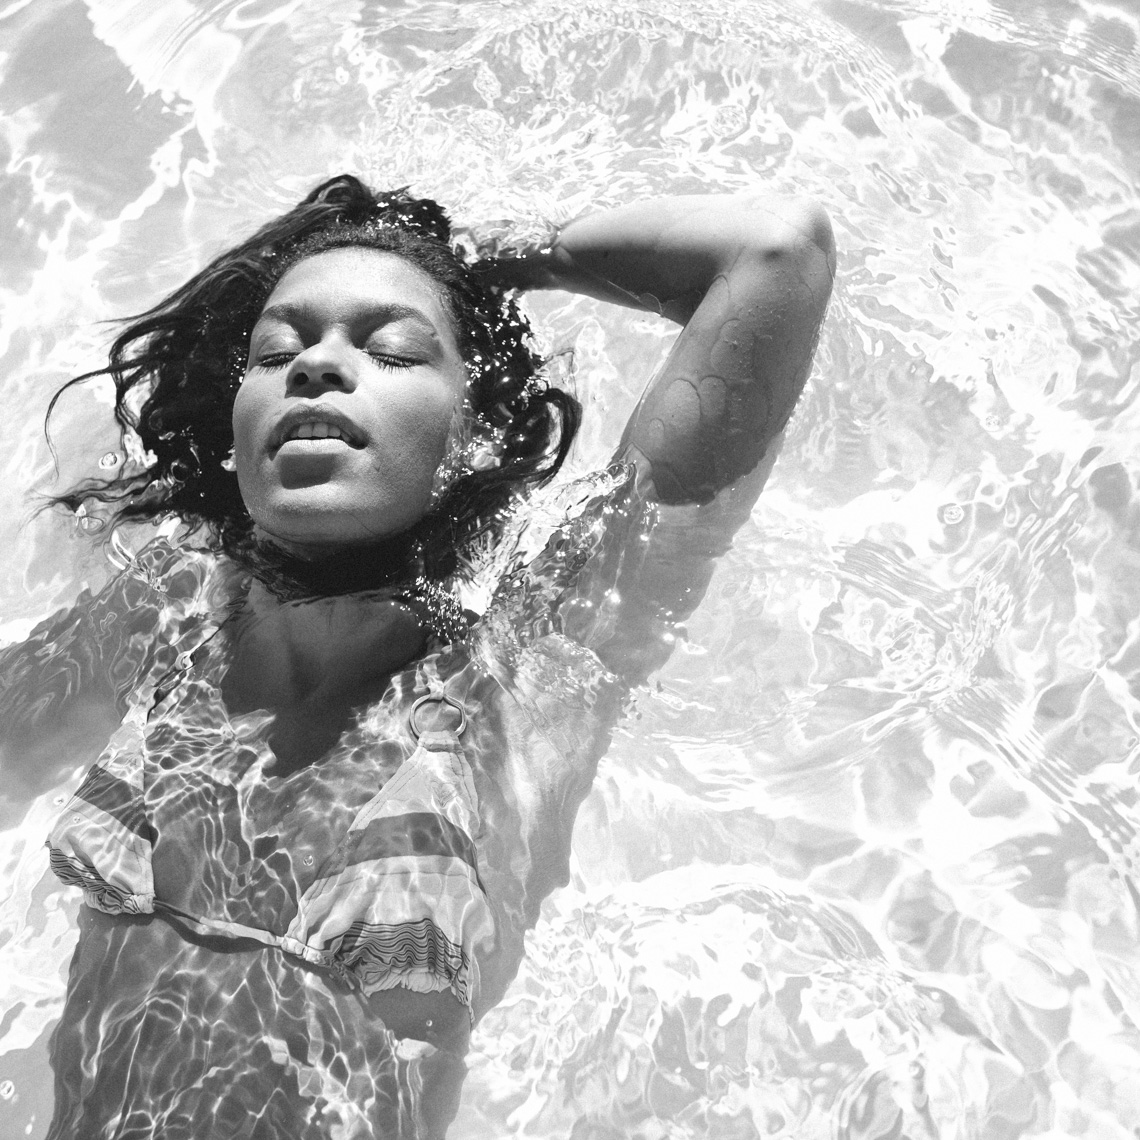 Black and white image of woman in bikini swimming in pool